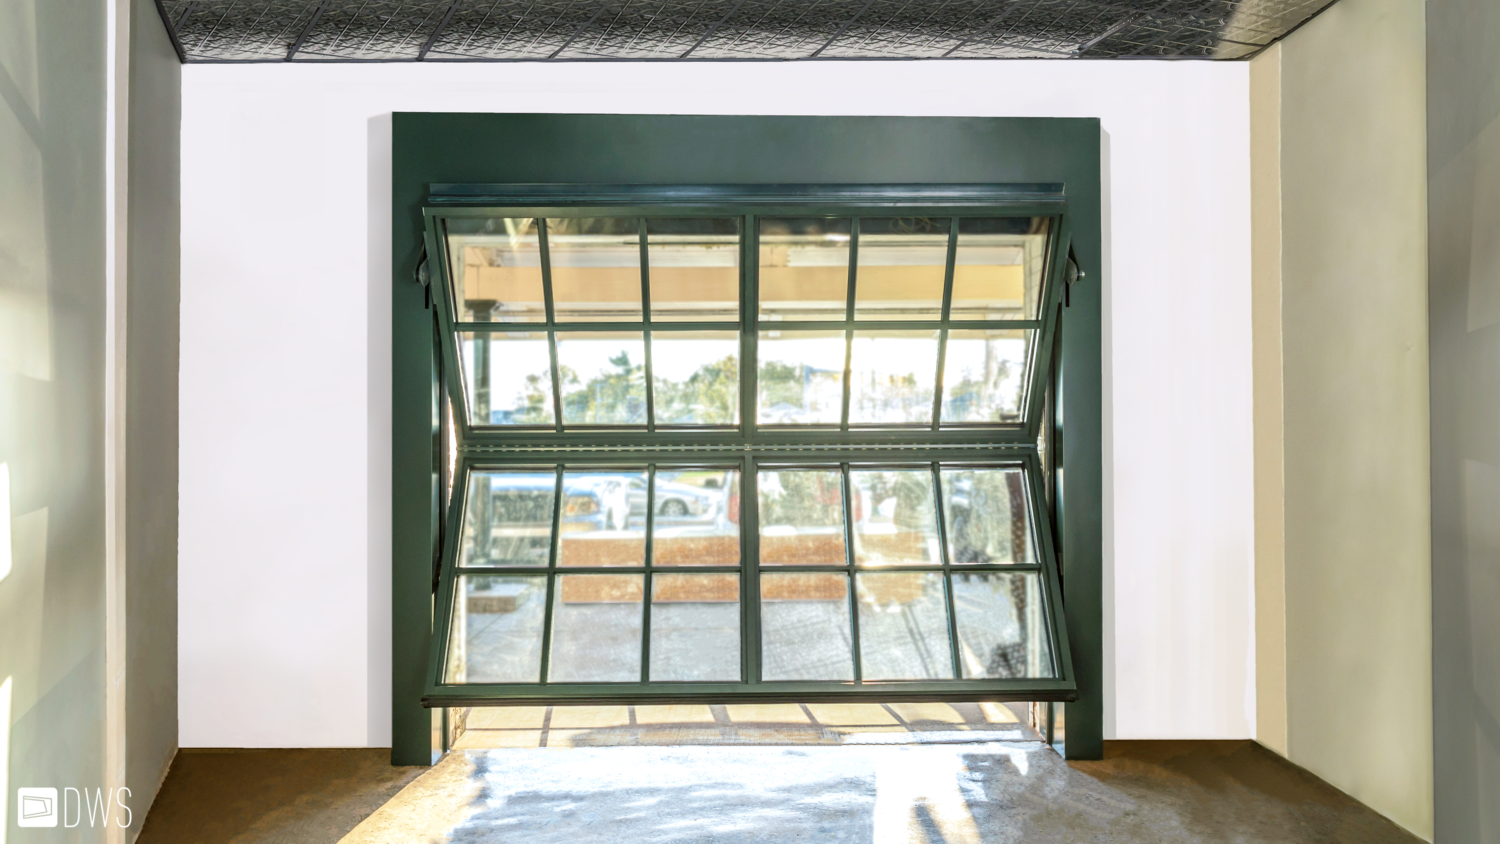 Commercial Bifold Garage Door, Residential Interior Glass Garage Doors